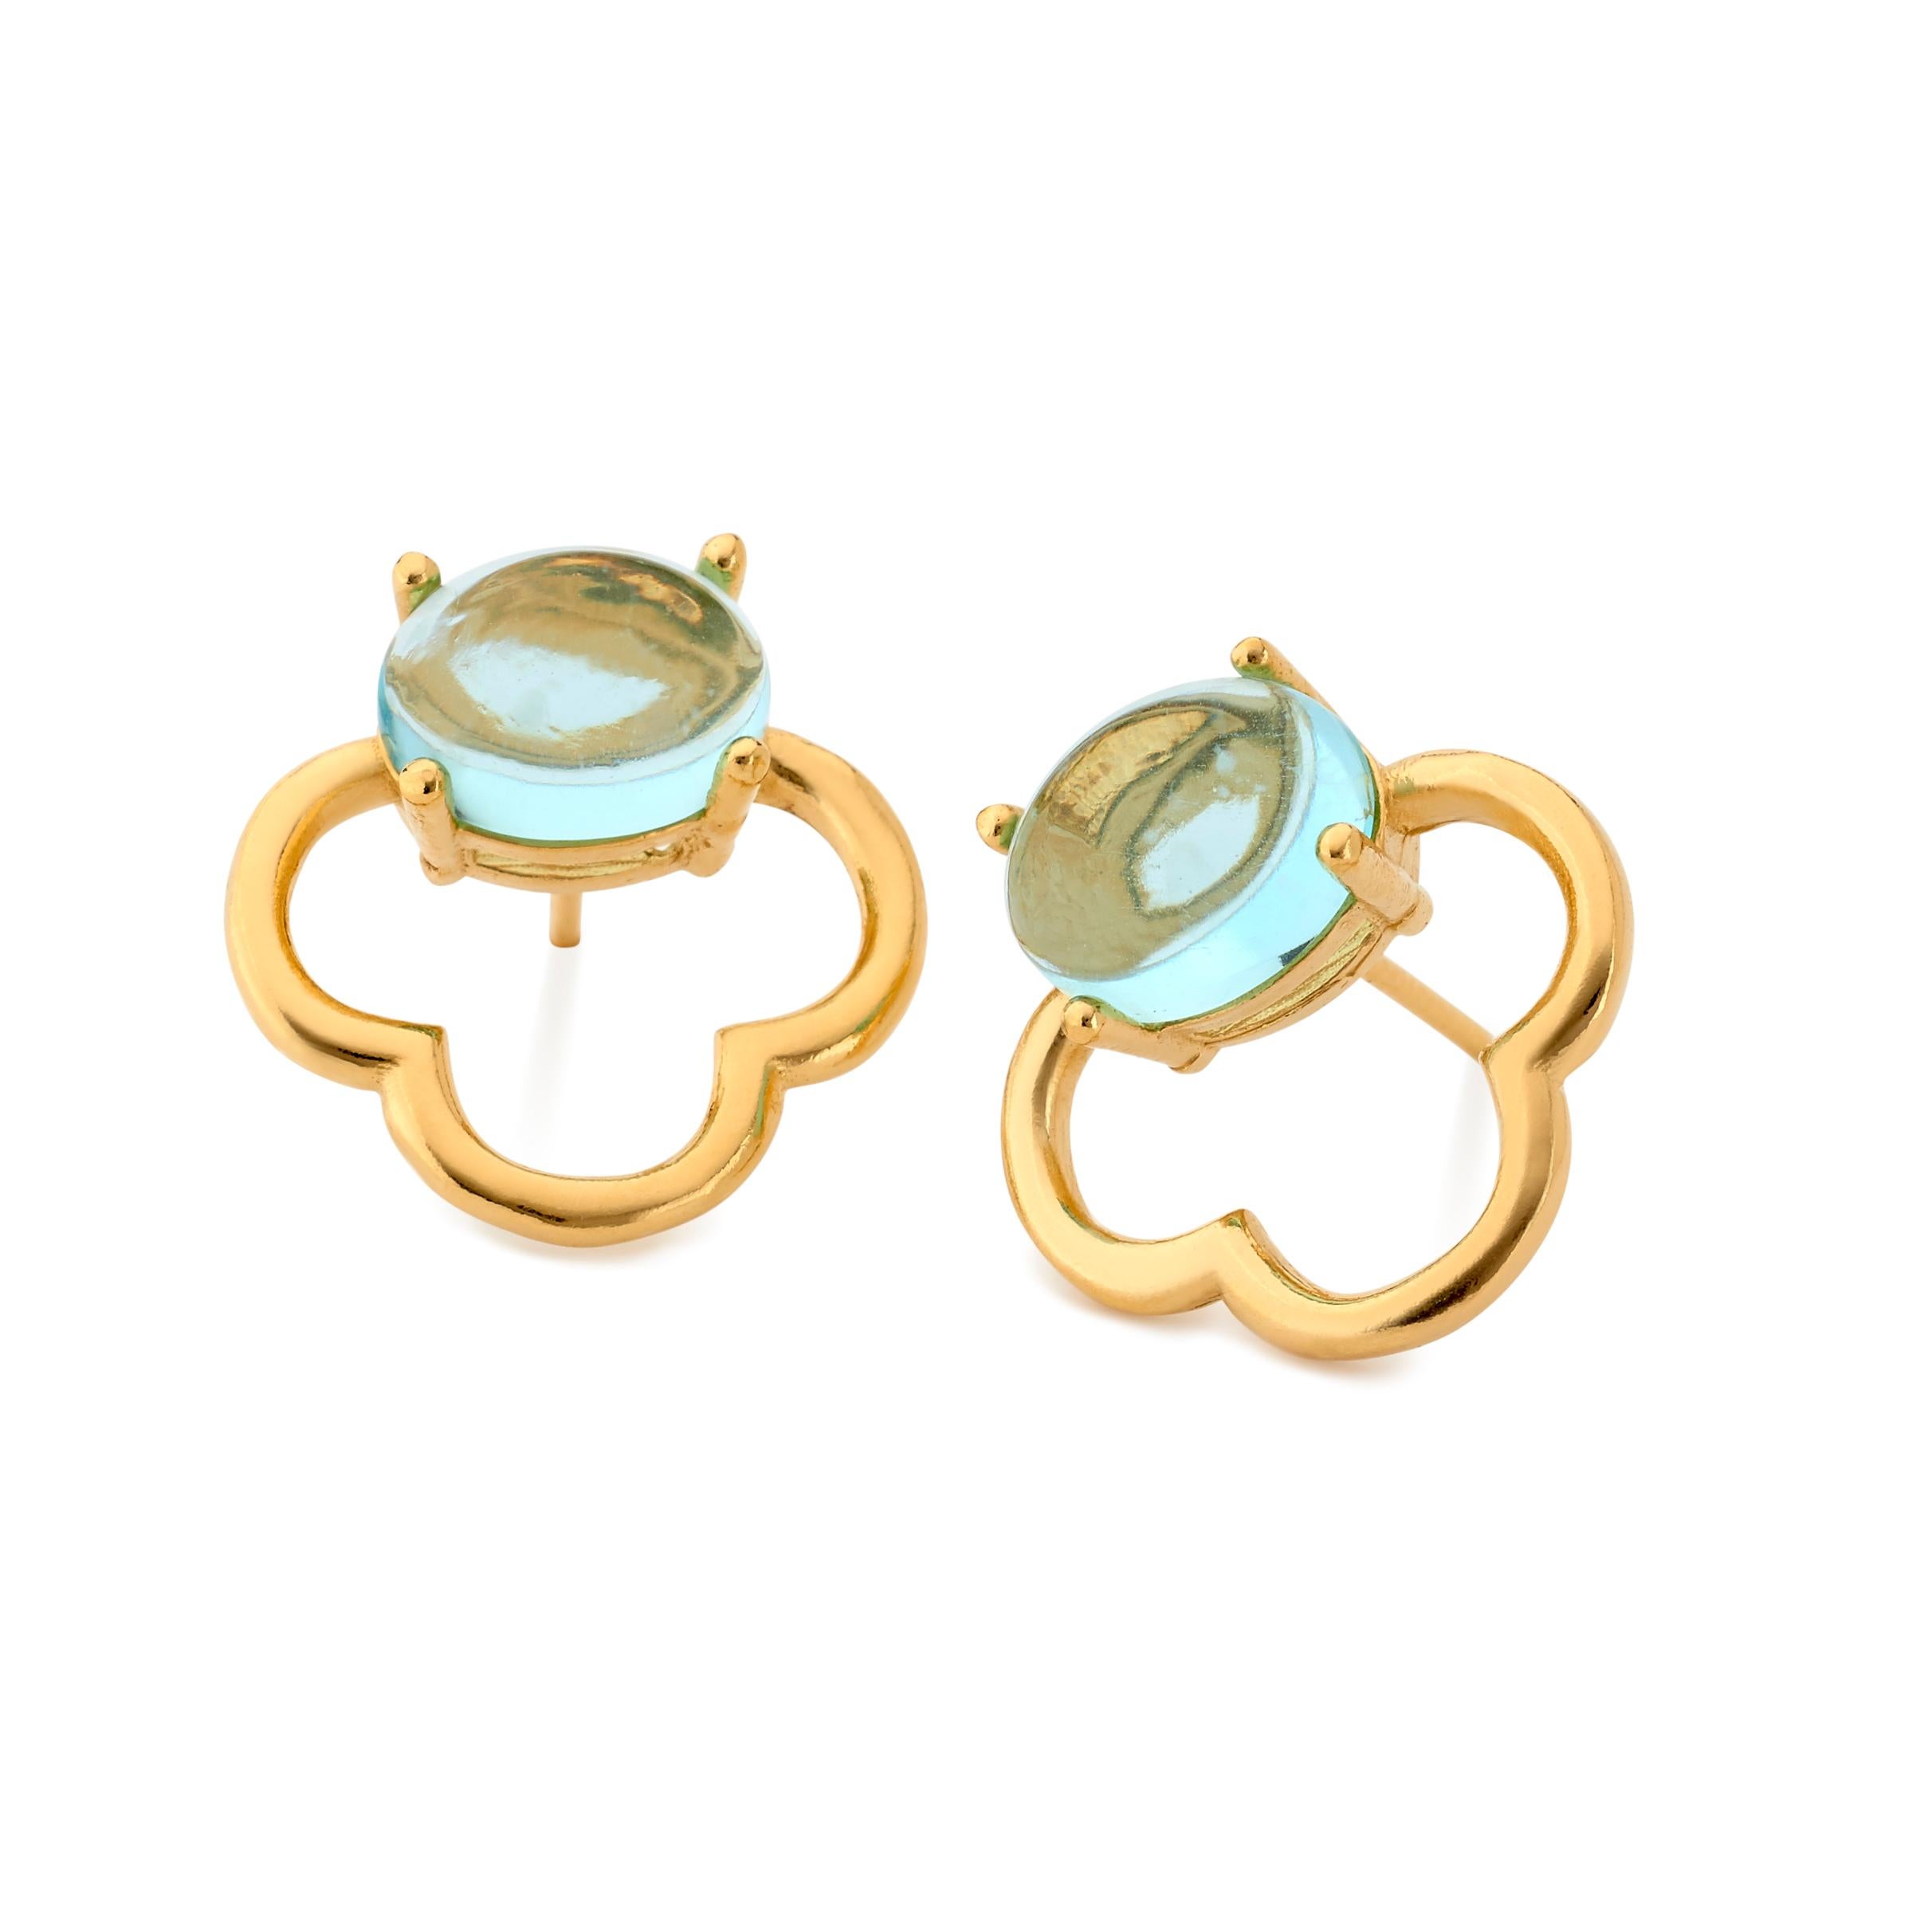 MAVIADA's 18k Vermeil Capri Rose Gold Green Amethyst quartz Stud Drop Earrings 11